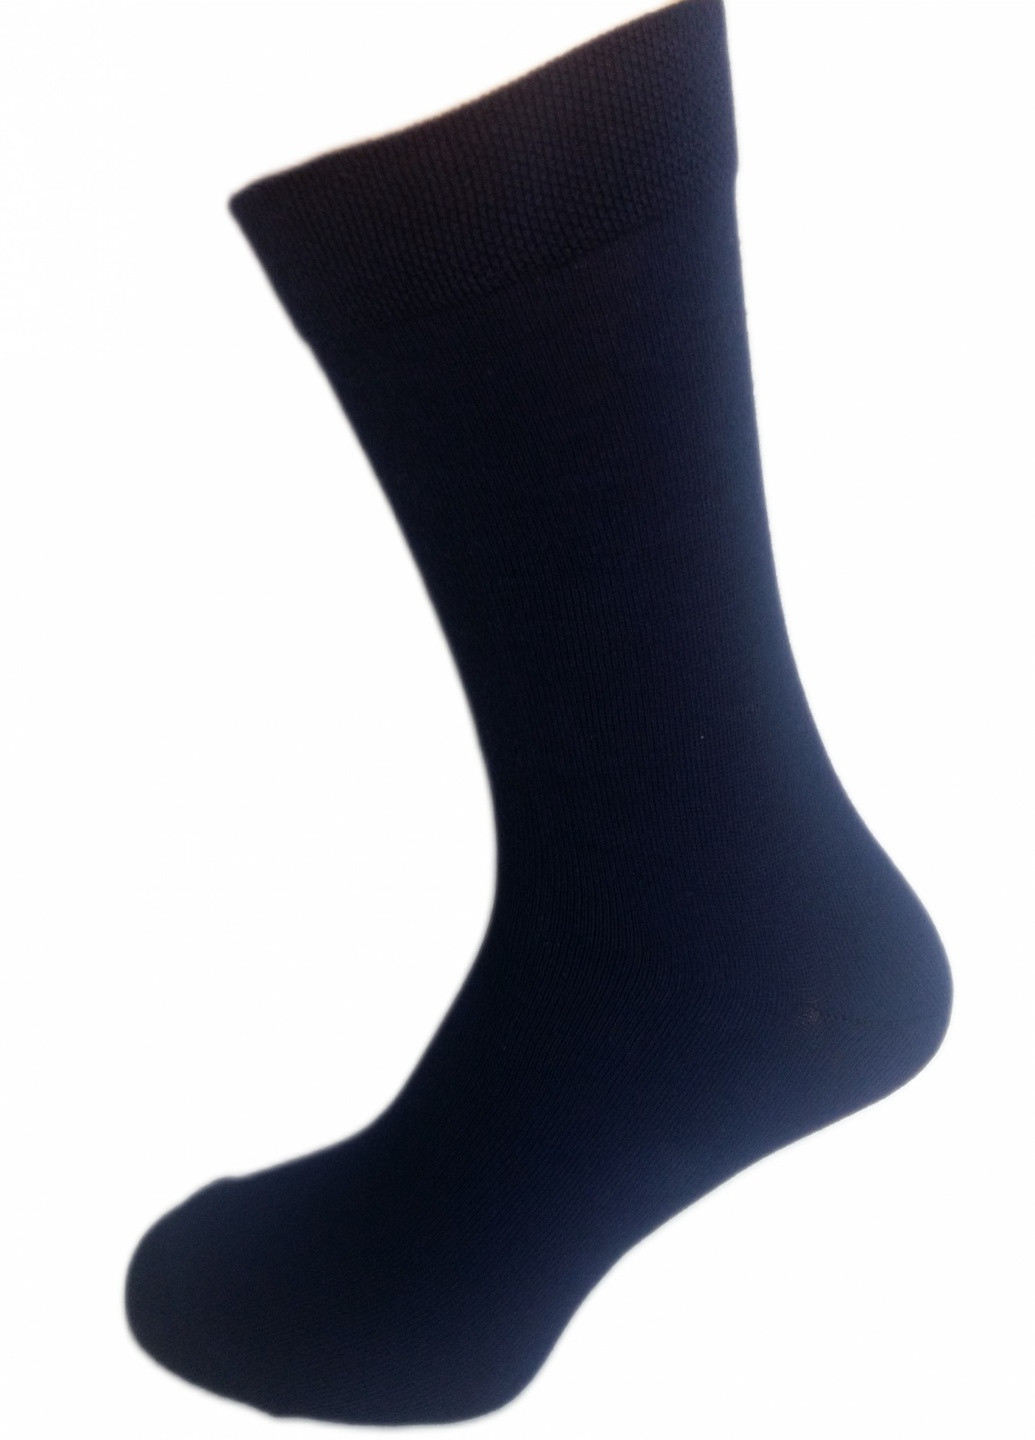 Шкарпетки чоловічі ТМ "Нова пара", 462 (в складі Акріл) НОВА ПАРА середня висота (257108321)